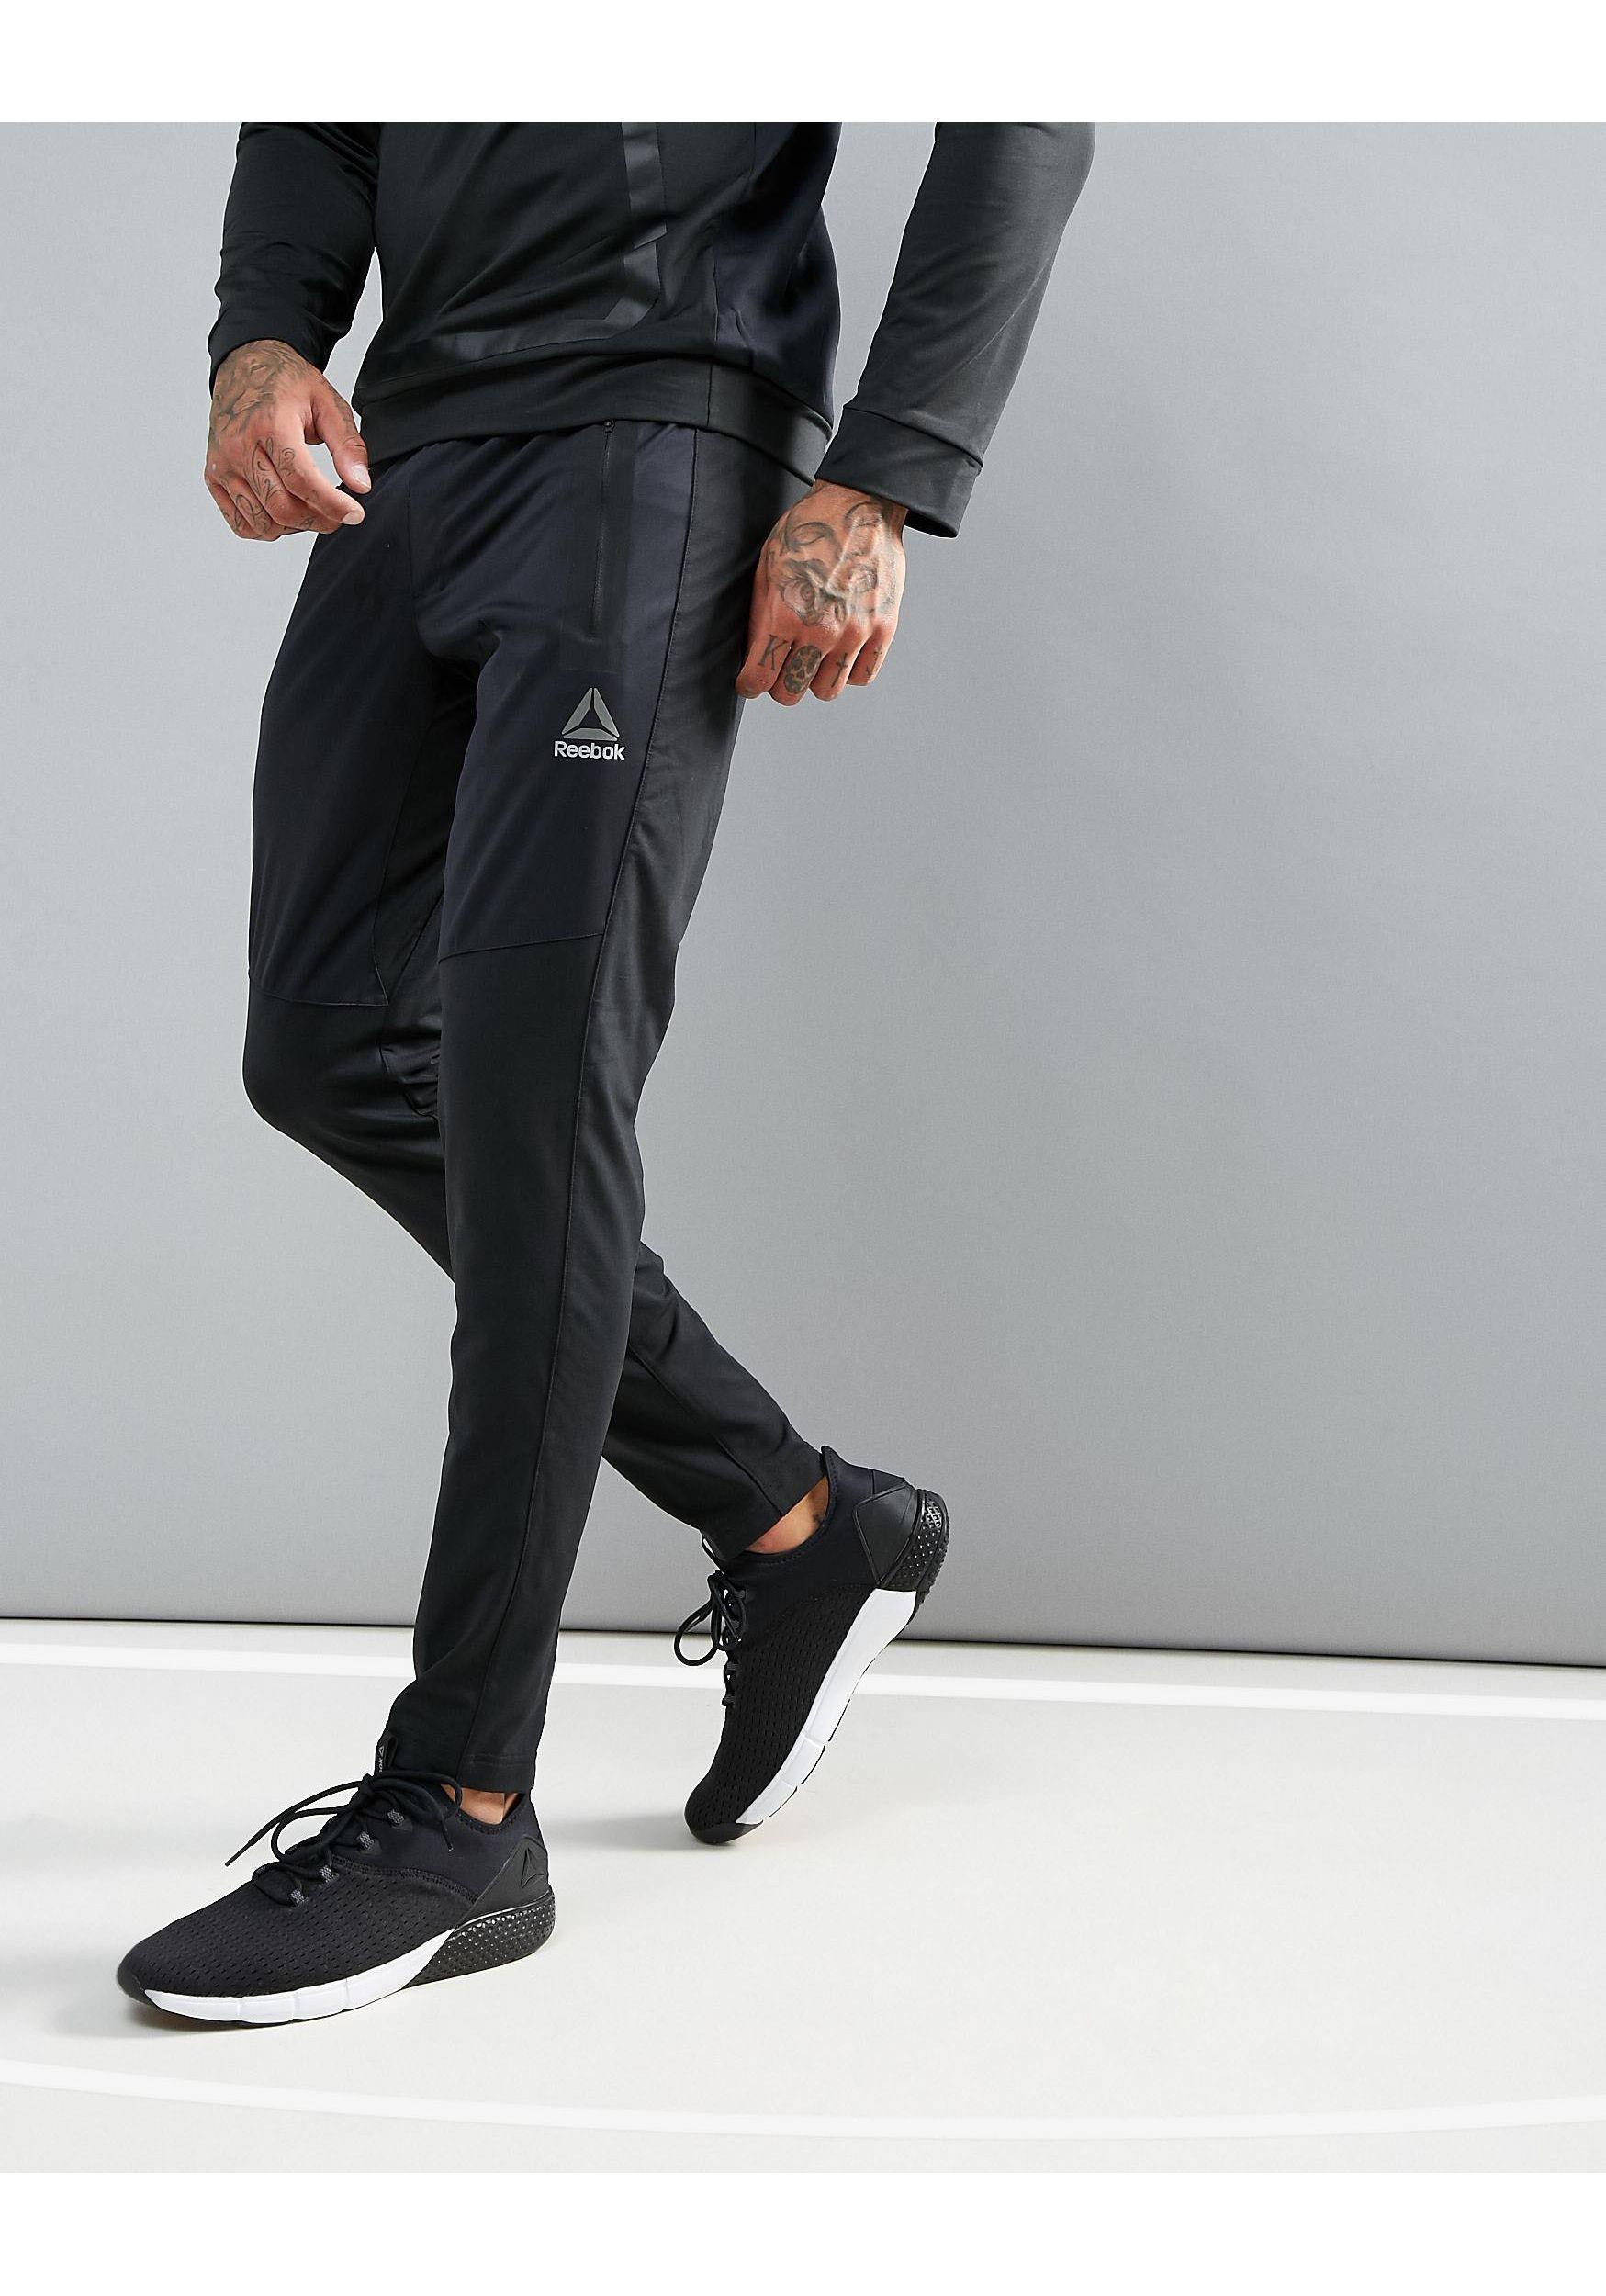 Reebok Synthetic Training Speedwick Pants In Black Bq3399 for Men - Lyst